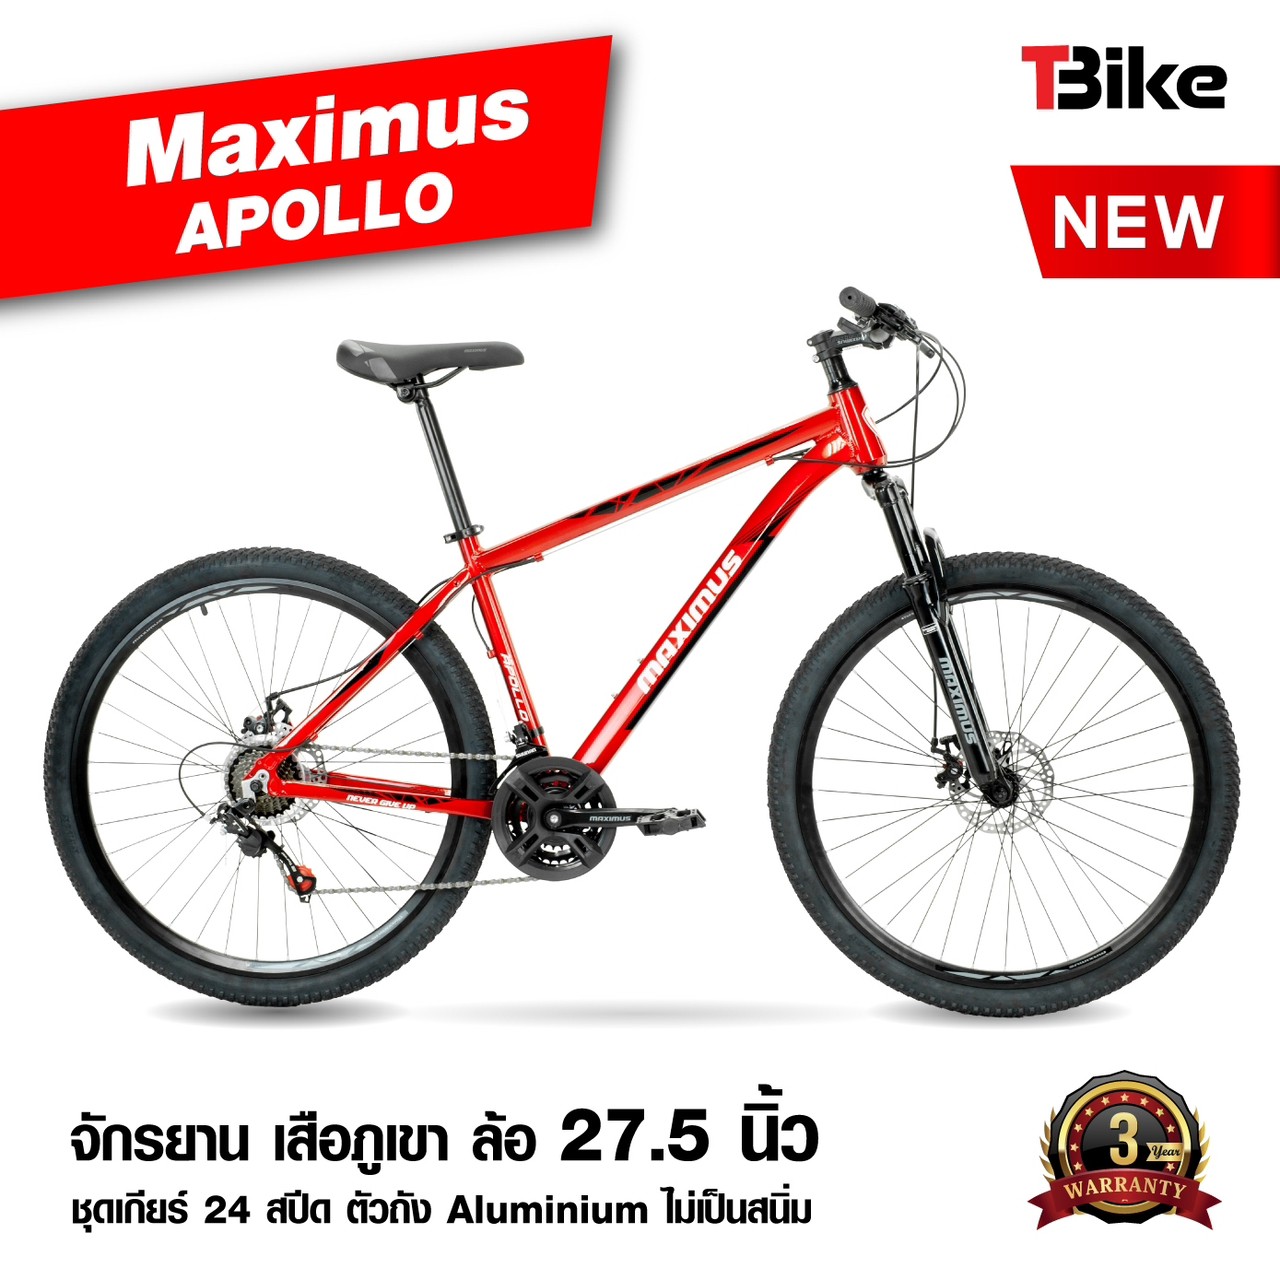 สีใหม่ !! จักรยานเสือภูเขา เฟรมอลูมิเนียมซ่อนสาย MAXIMUS รุ่น APOLLO ล้อ27.5 ชุดเกียร์ 24สปีด โช๊คล๊อคเอ้าท์ ดุมแบริ่ง ระบบดิสเบรค